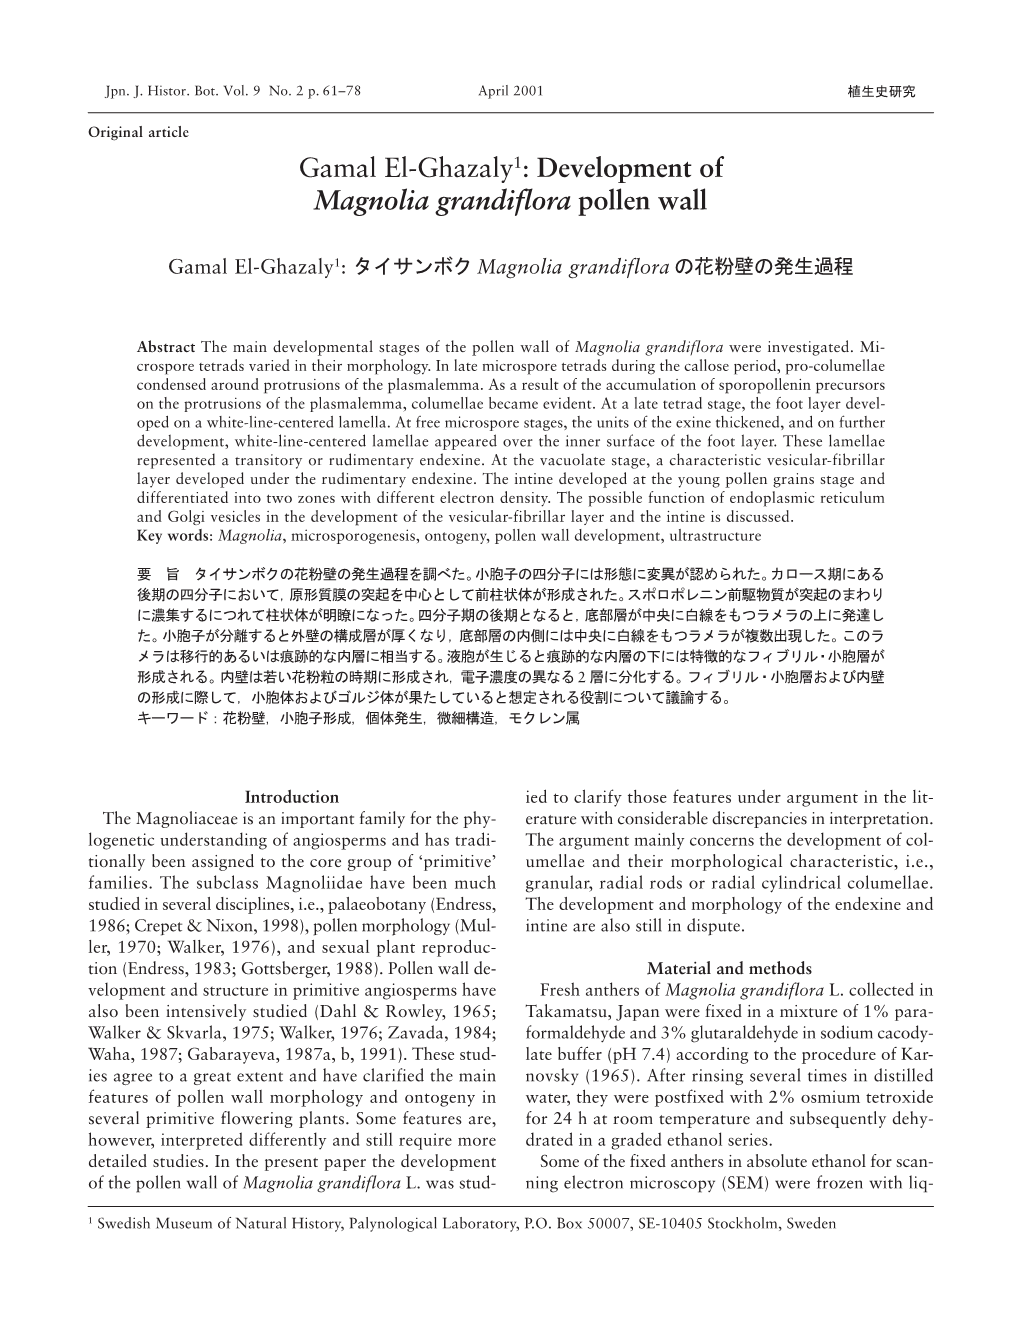 Development of Magnolia Grandiflora Pollen Wall